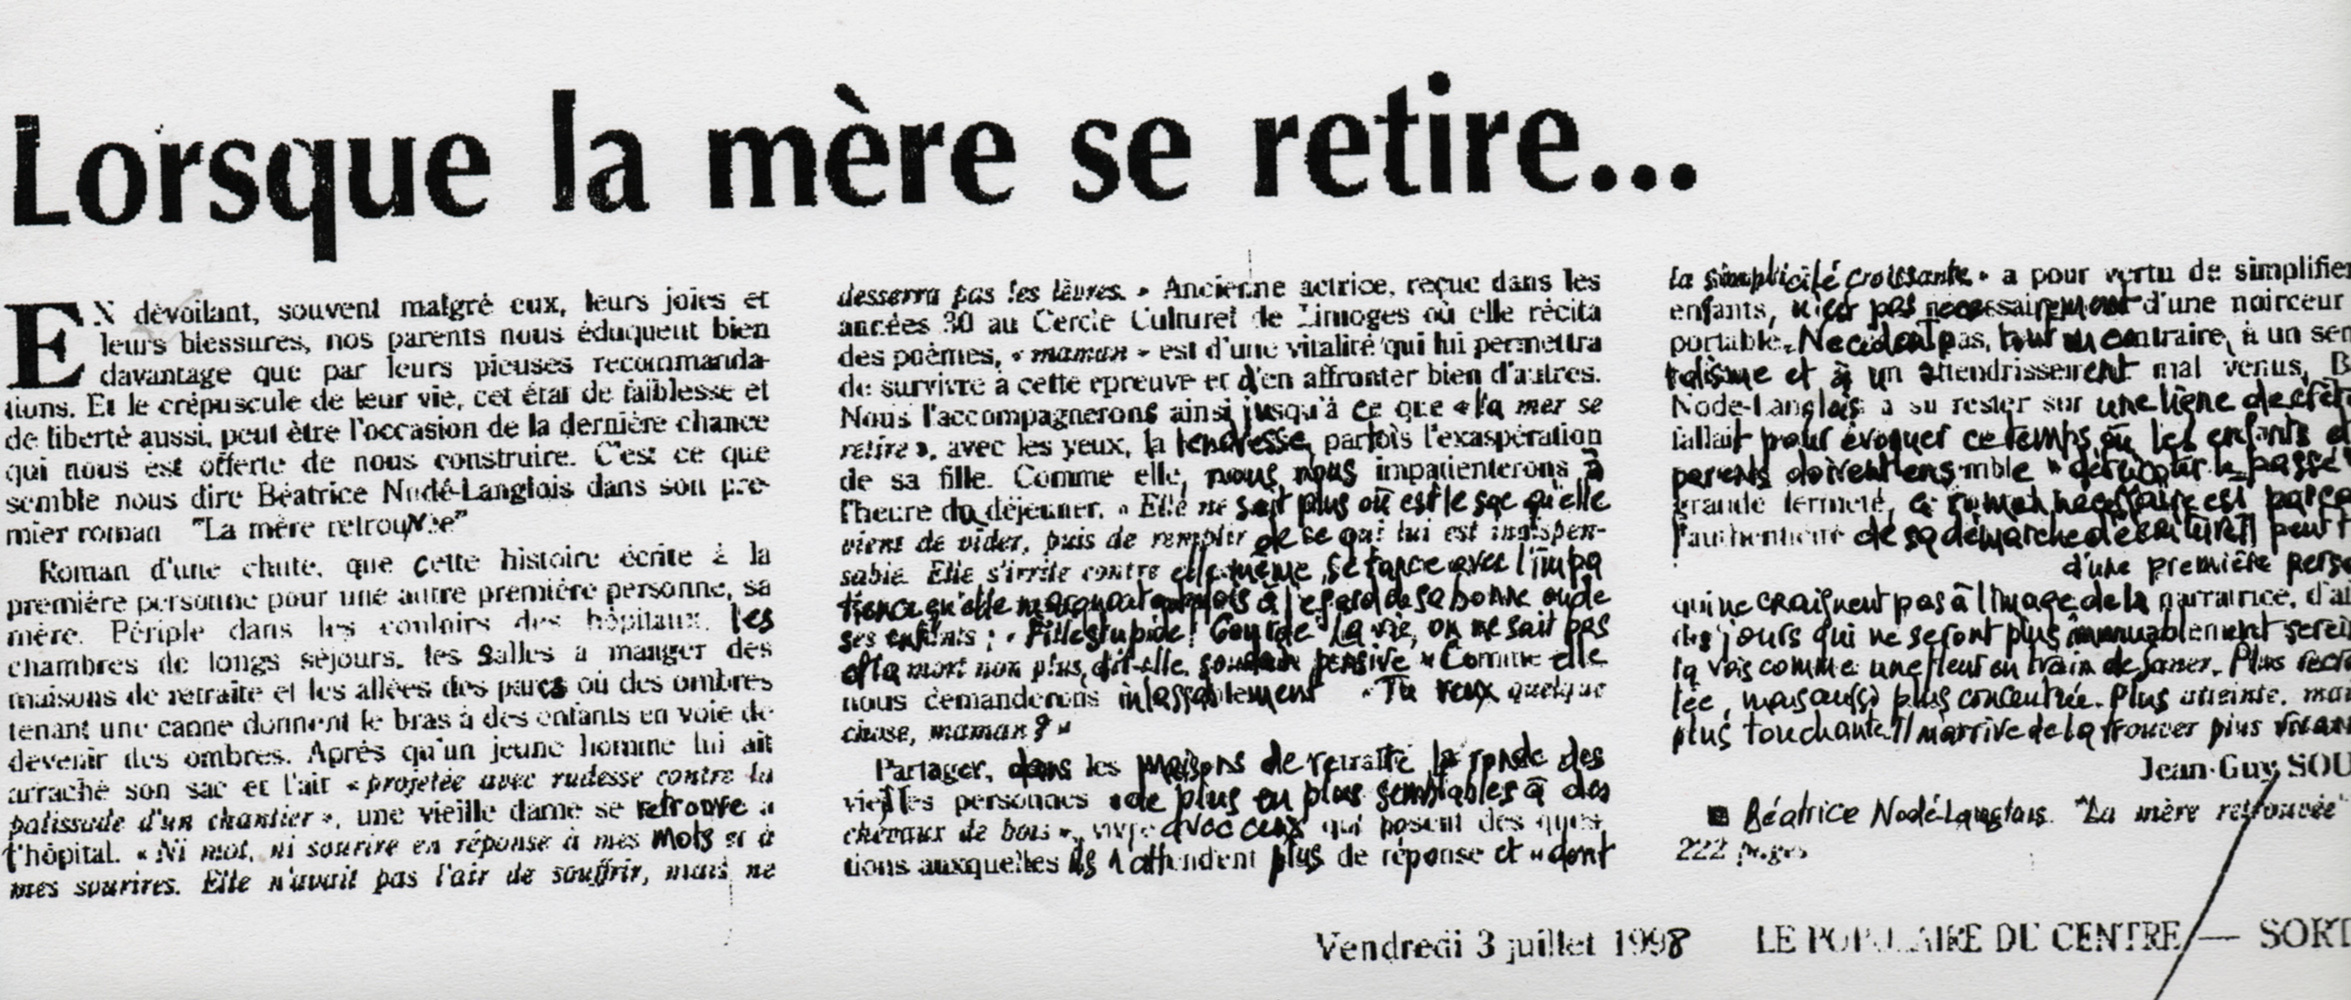 1998 Le Populaire Du Centre